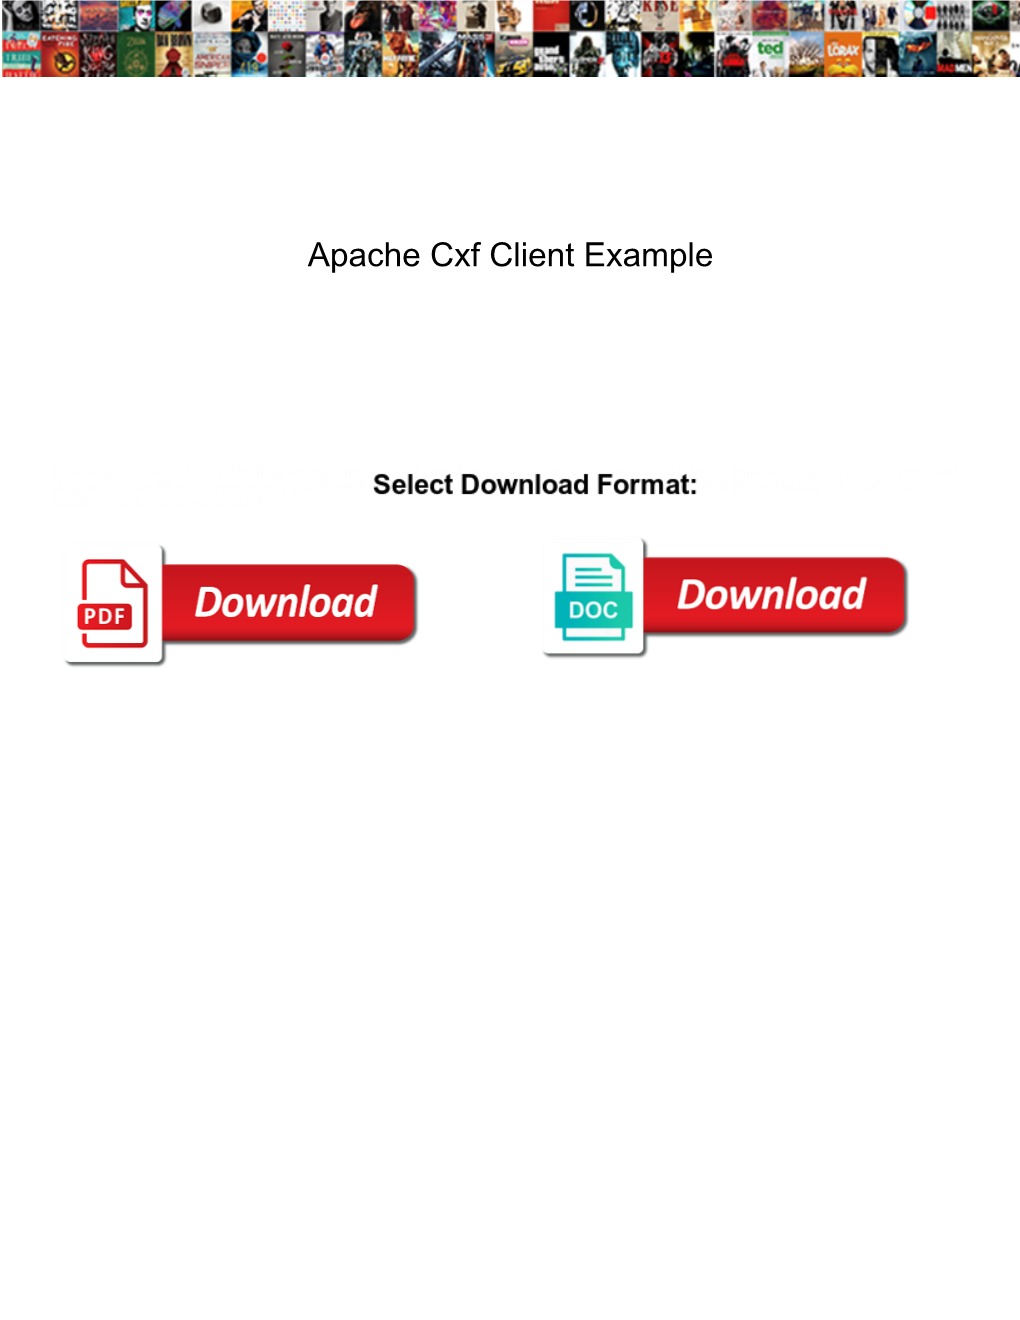 Apache Cxf Client Example